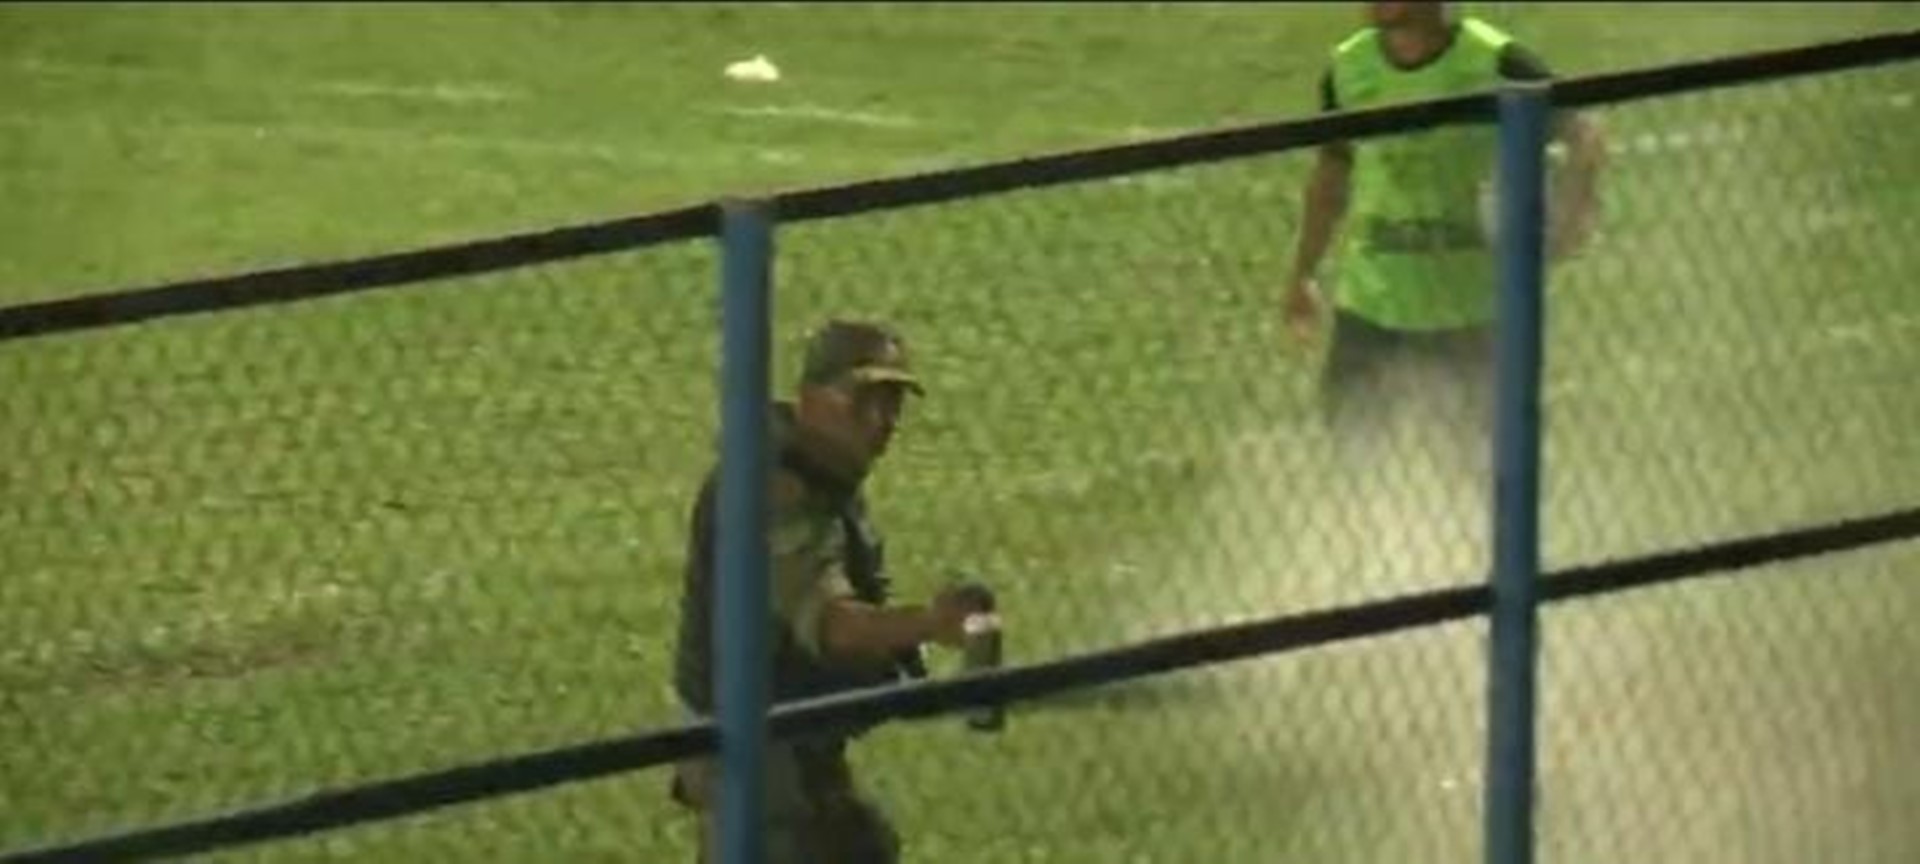 Após uso de spray de pimenta contra torcedores, PM será investigado no Piauí